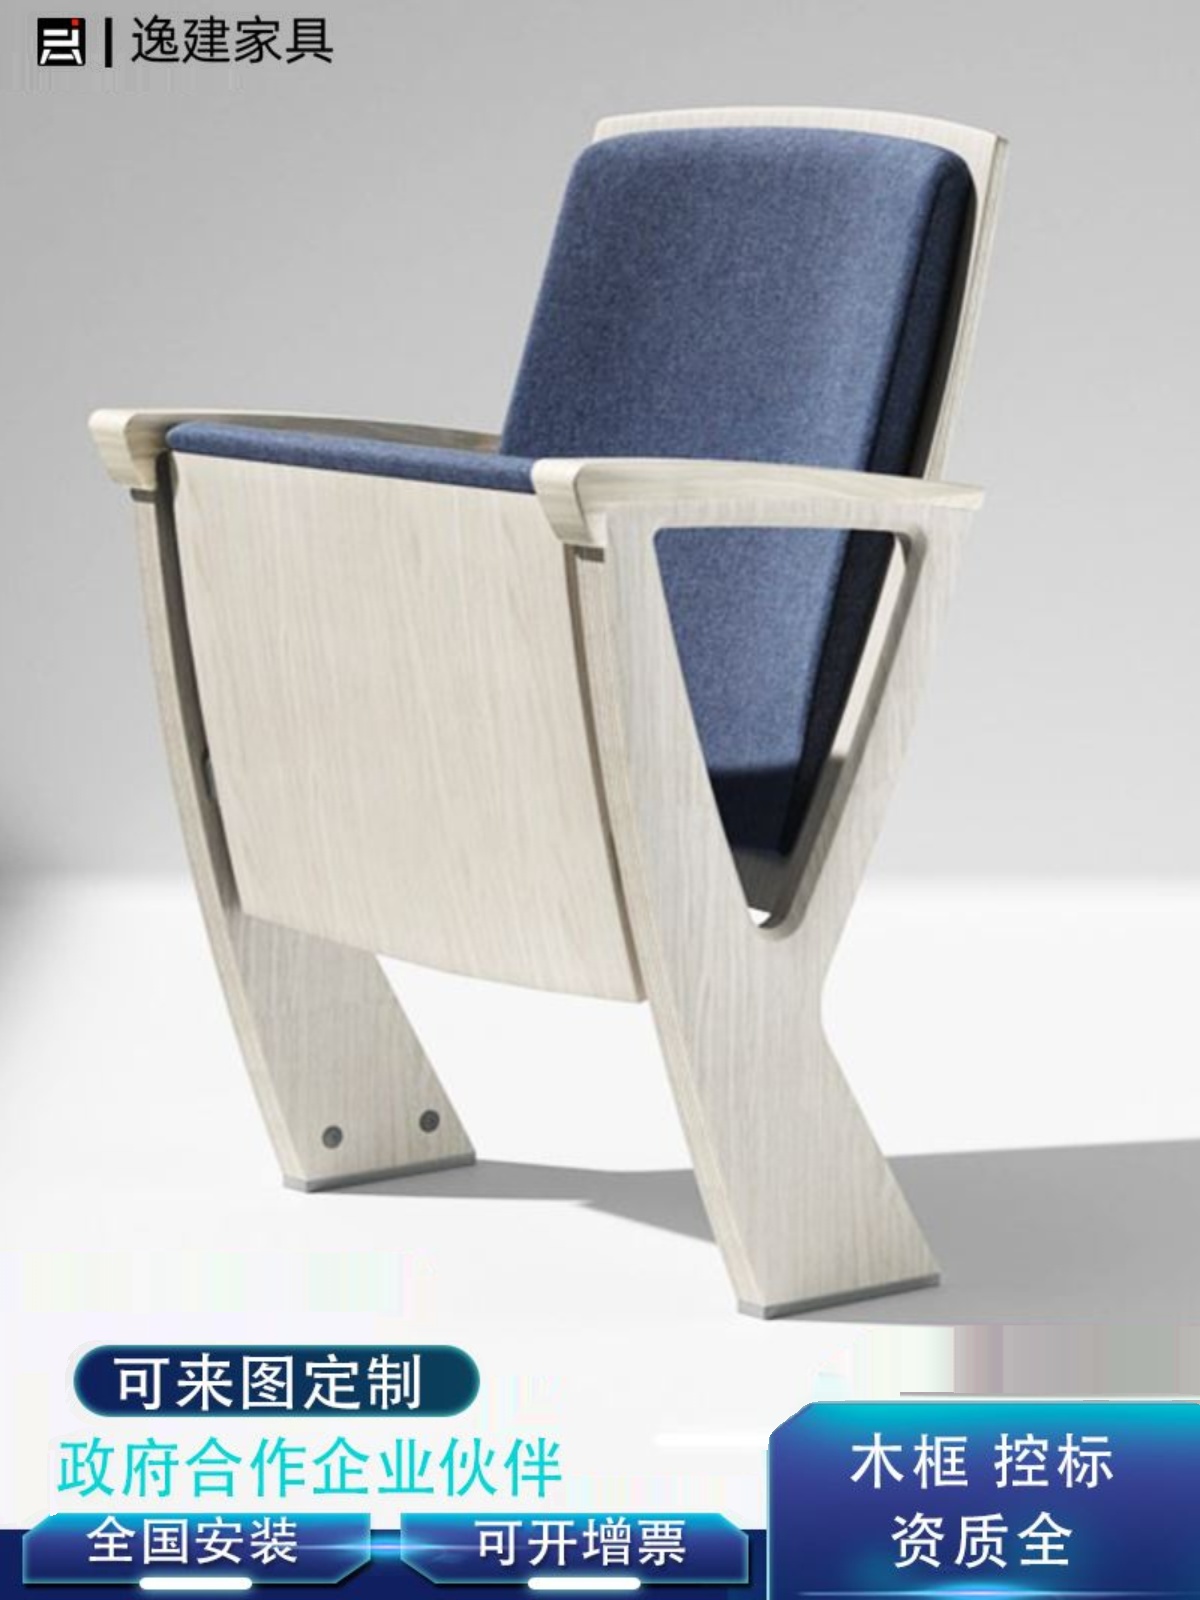 礼堂椅定制高端排椅实木扶手海绵座椅学校报告厅座椅阶梯教室椅子